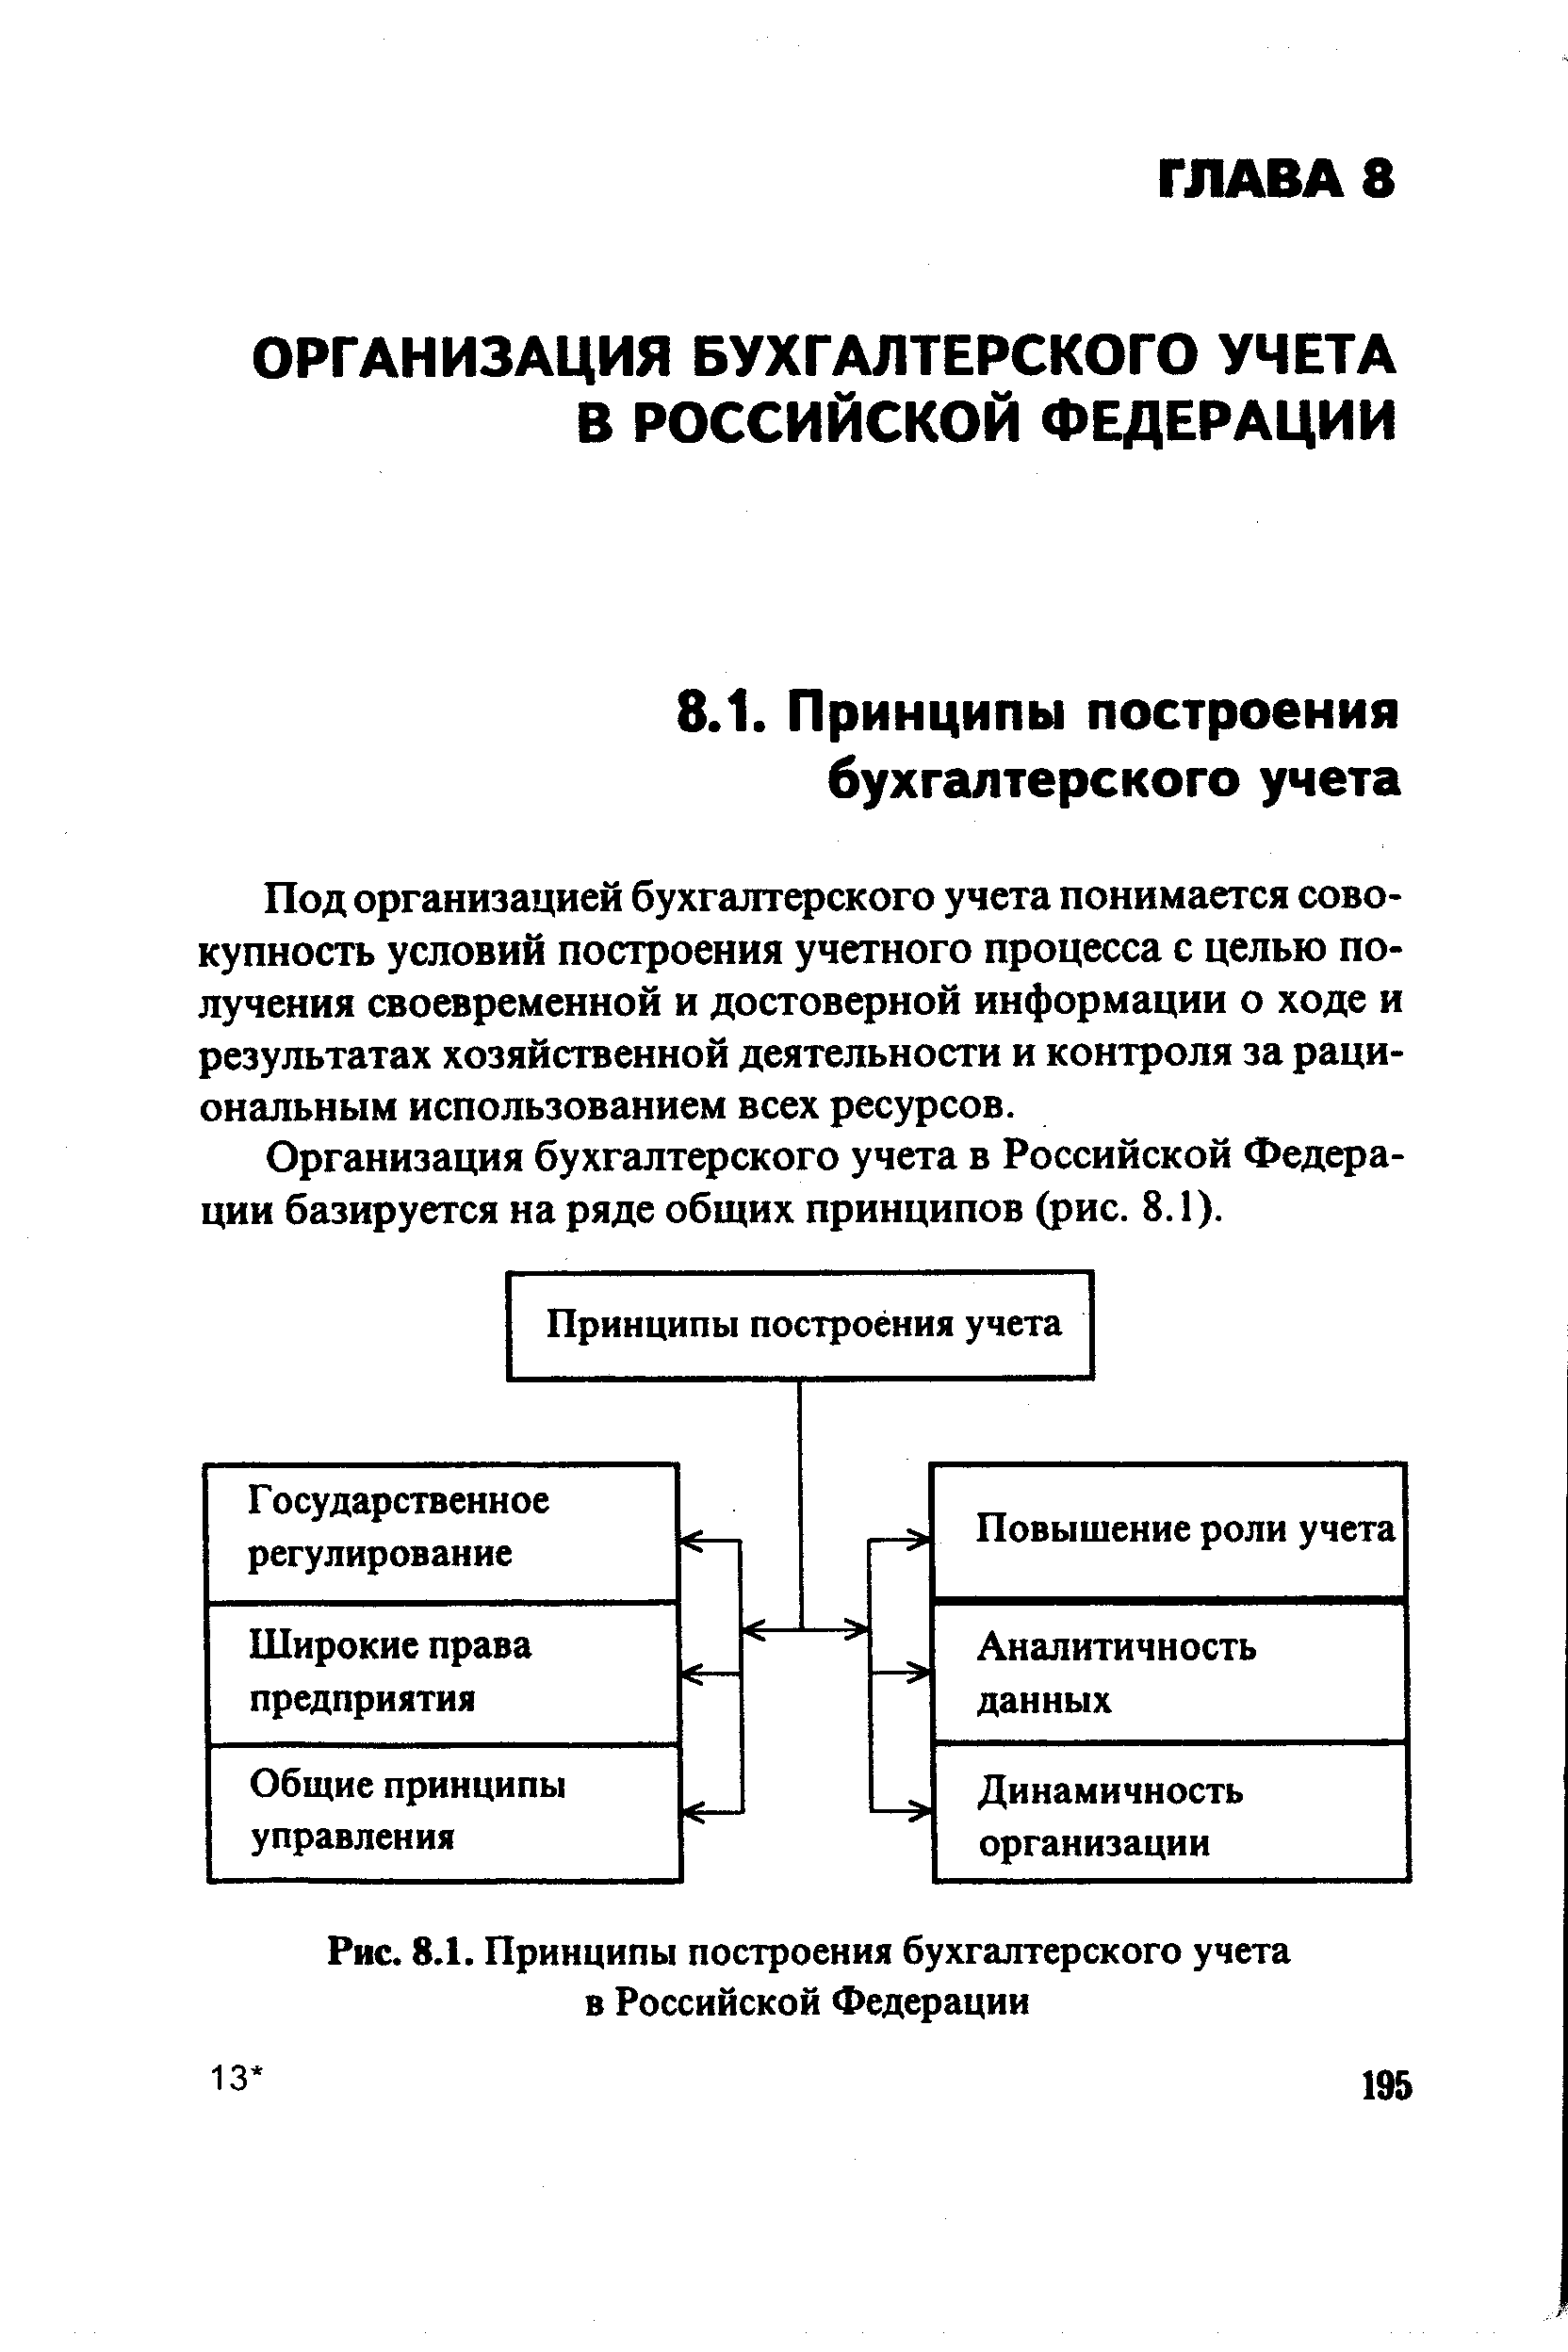 Рис. 8.1. Принципы построения бухгалтерского учета в Российской Федерации
